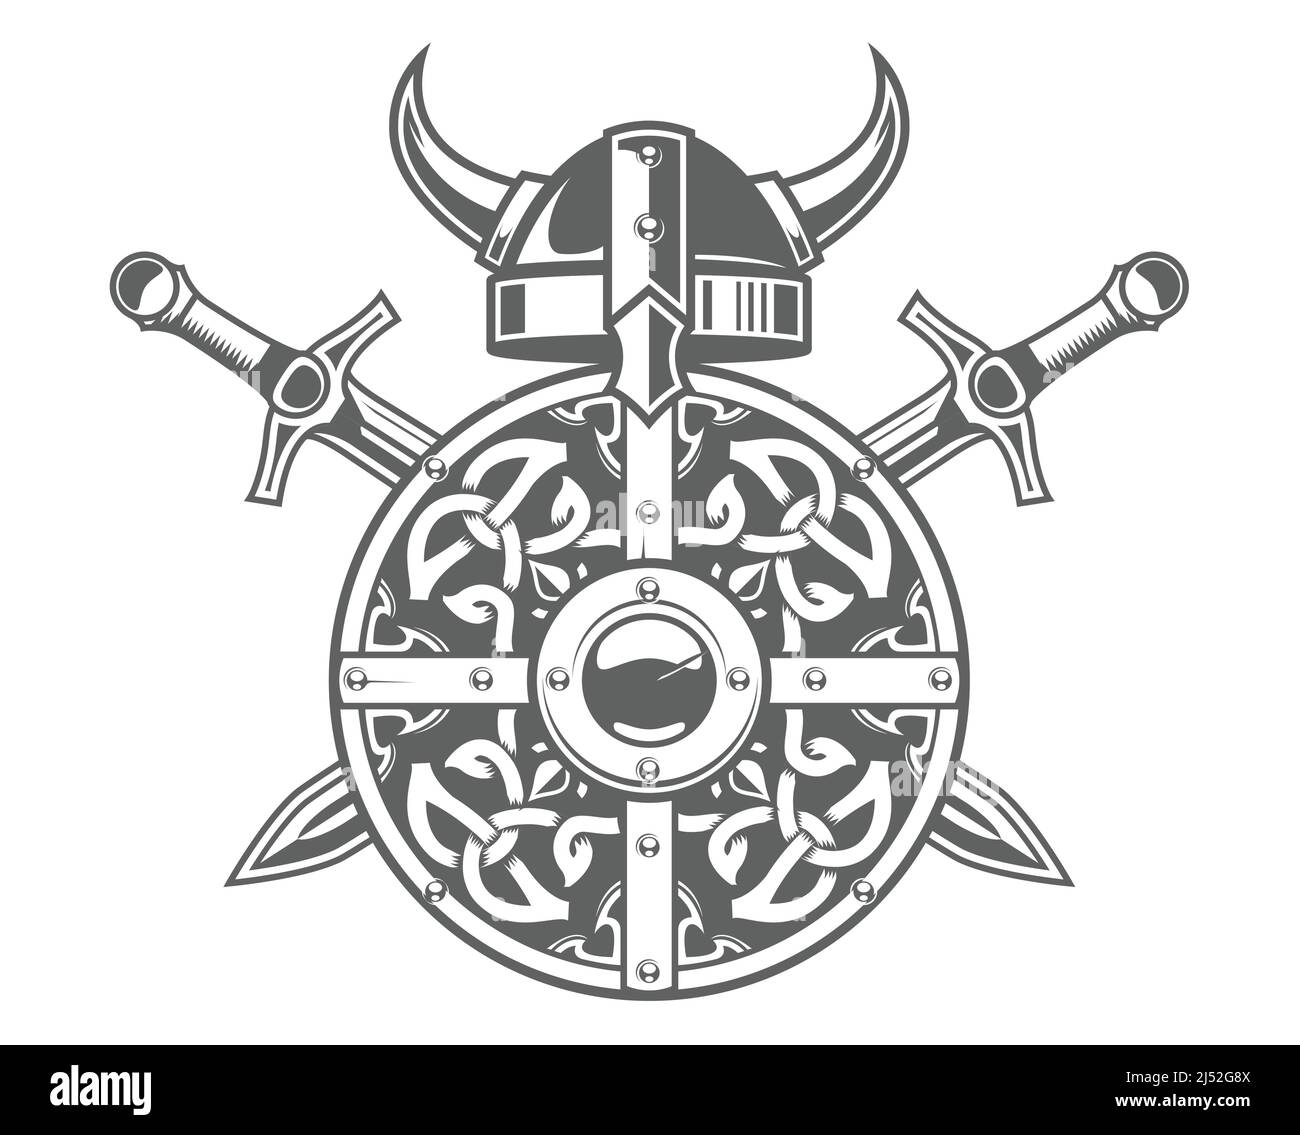 Scudo vichingo rotondo con motivo celtico e casco cornato, stemma barbaro con due spade incrociate, emblema vichingo scandinavo, vettore Illustrazione Vettoriale